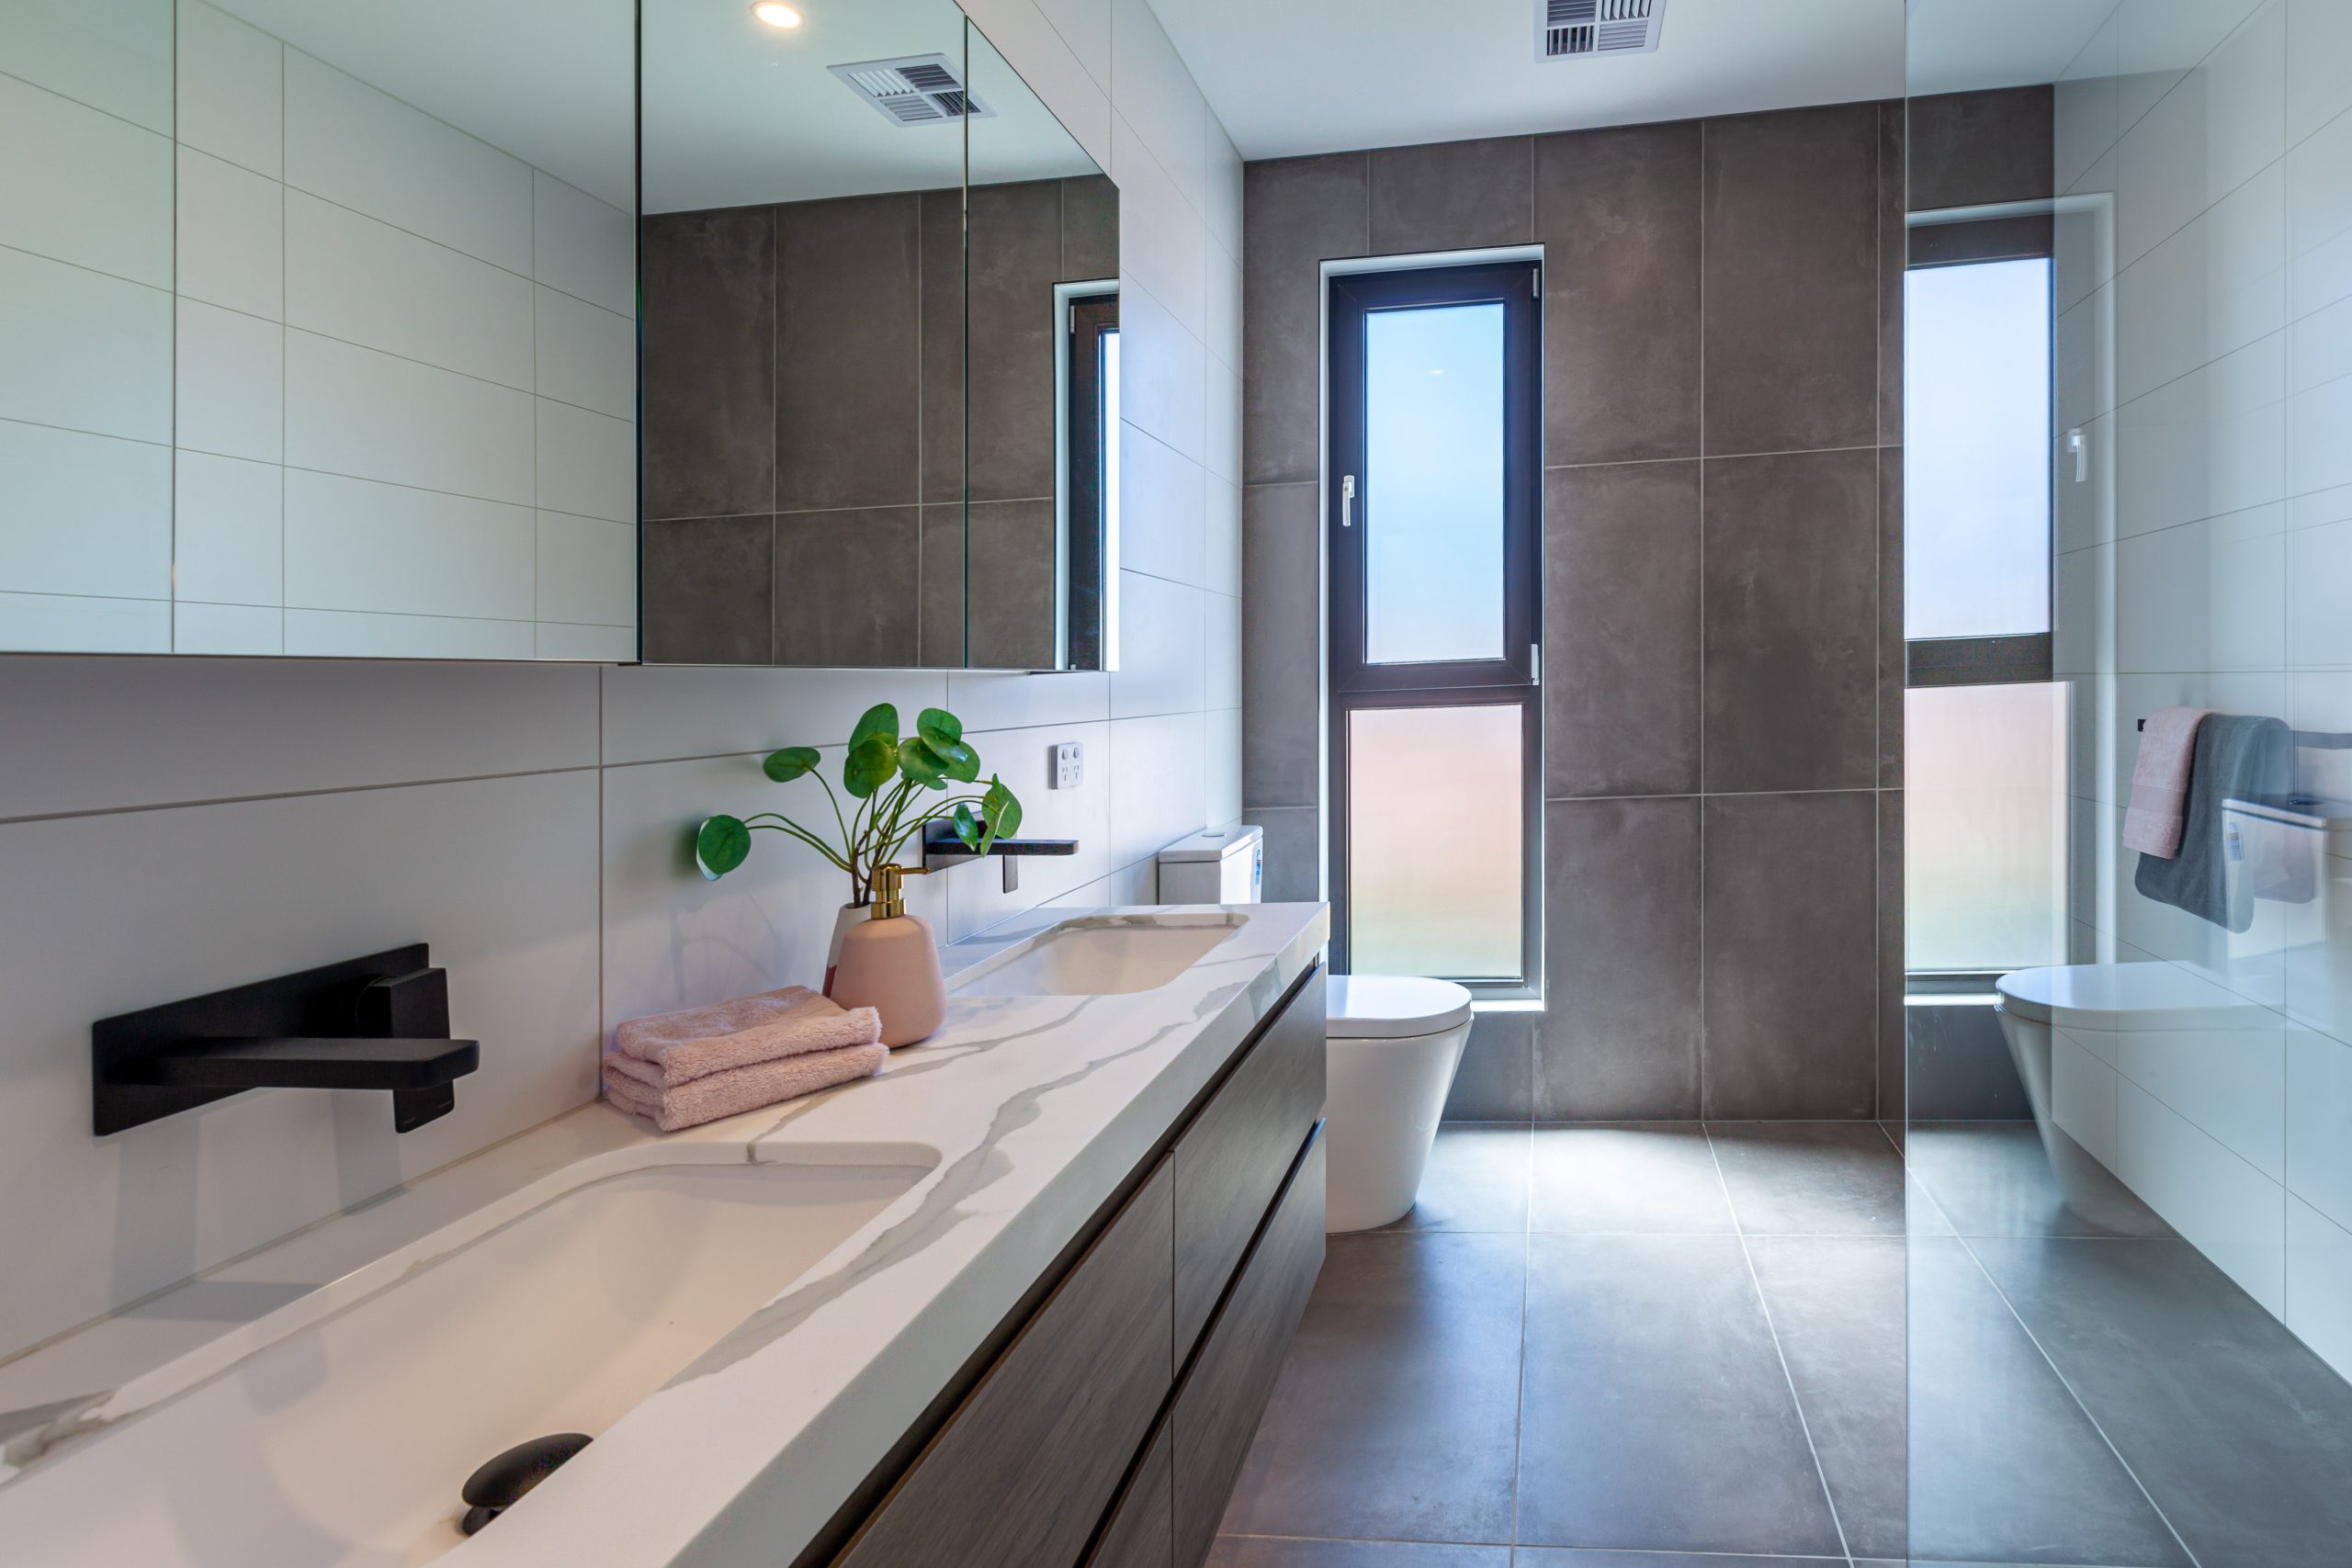 Melbourne,,australia, ,circa,october,,2020:,beautiful,bathroom,interior,design